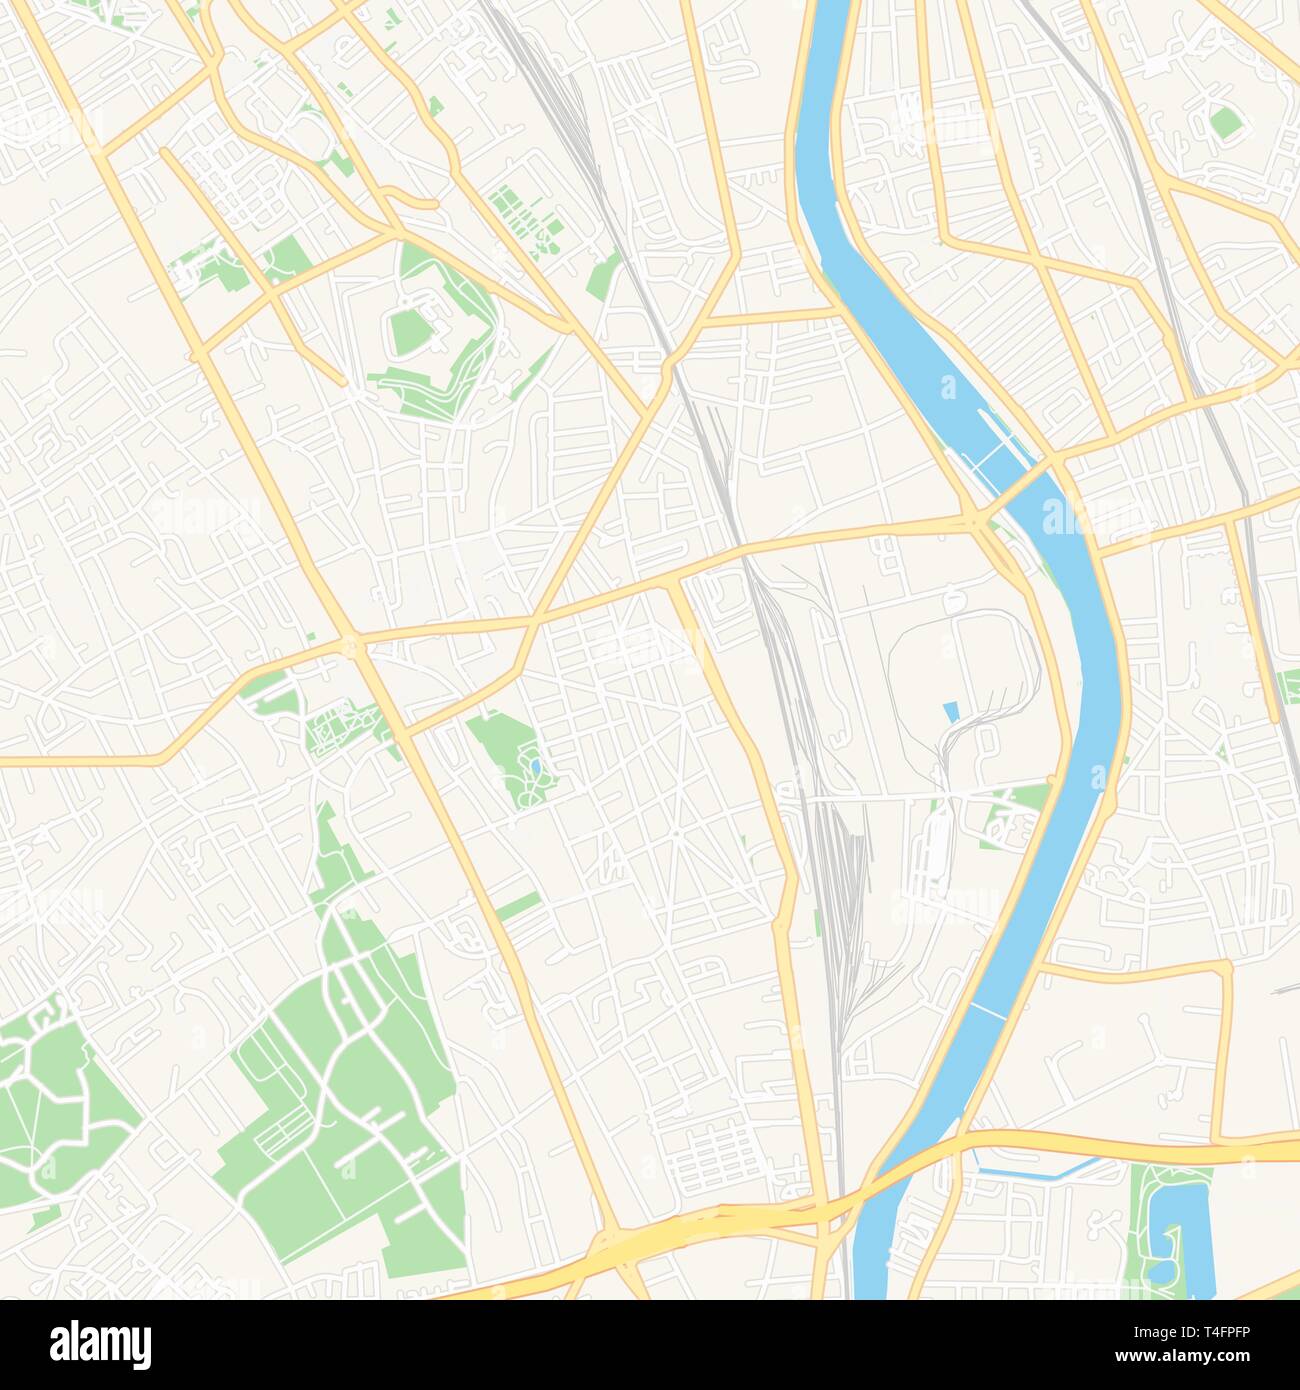 Druckbare Karte von Vitry-sur-Seine, Frankreich mit Haupt- und Nebenstraßen und größere Bahnen. Diese Karte ist sorgfältig für Routing und Inverkehrbringen ind konzipiert Stock Vektor